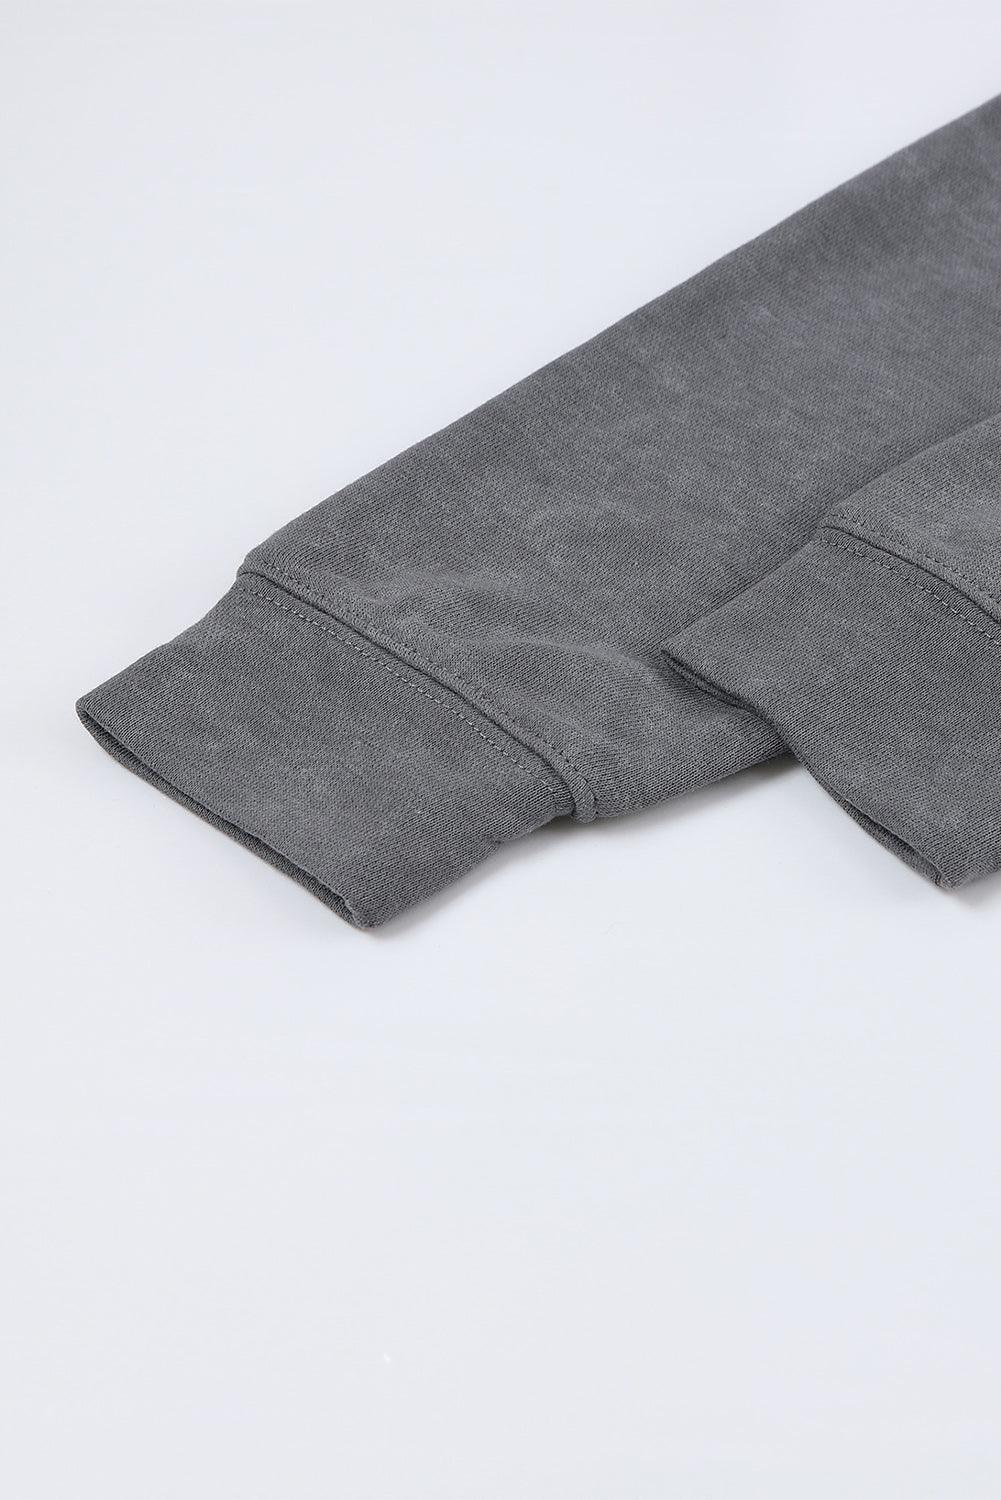 Gray Vintage Washed Puff Sleeve Sweatshirt - L & M Kee, LLC